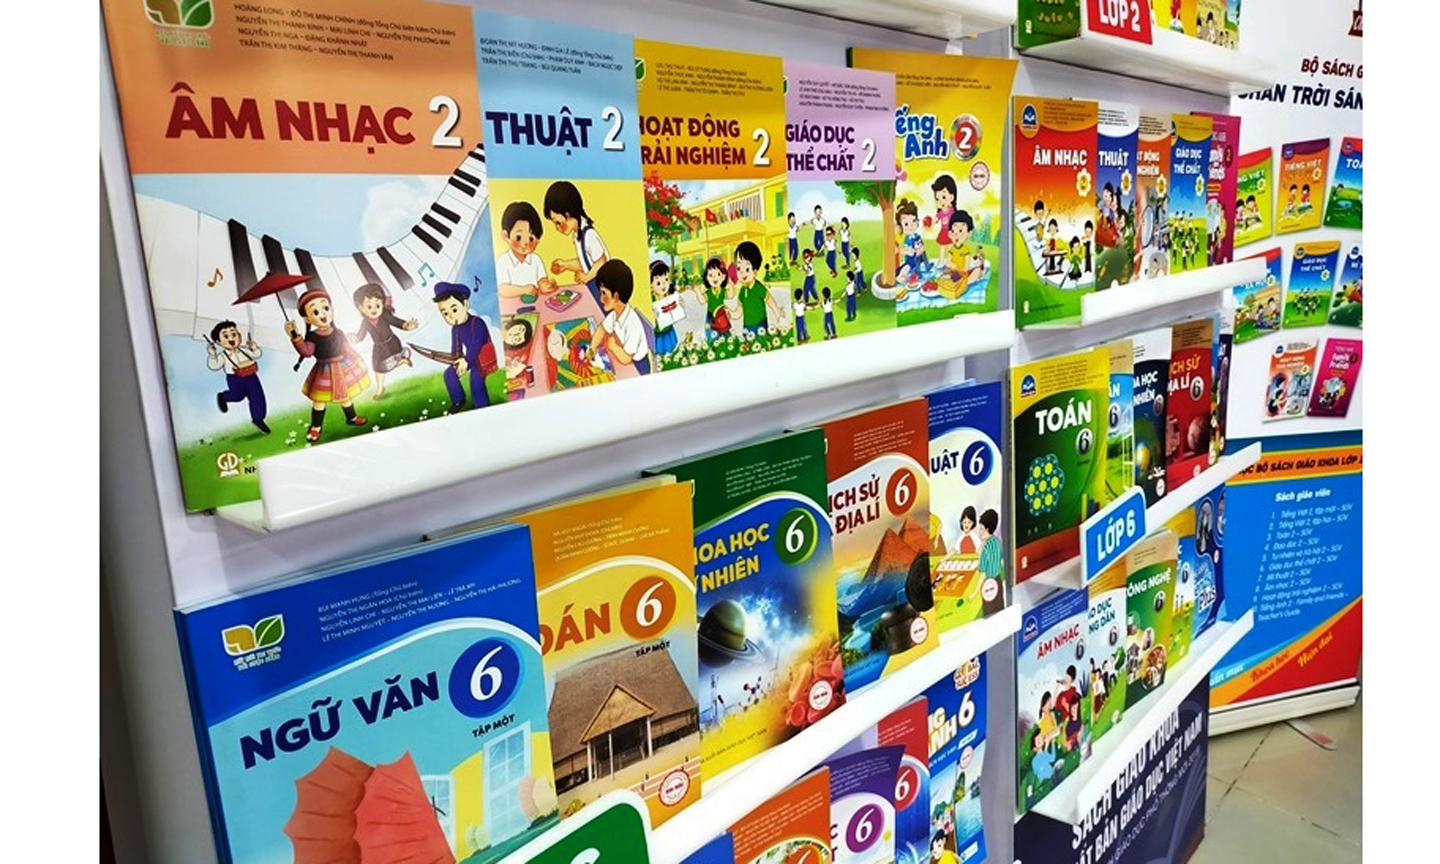 Mấy năm gần đây, dư luận xã hội dành nhiều sự quan tâm đối với sách giáo khoa. Ảnh minh họa: Nhà xuất bản giáo dục Việt Nam